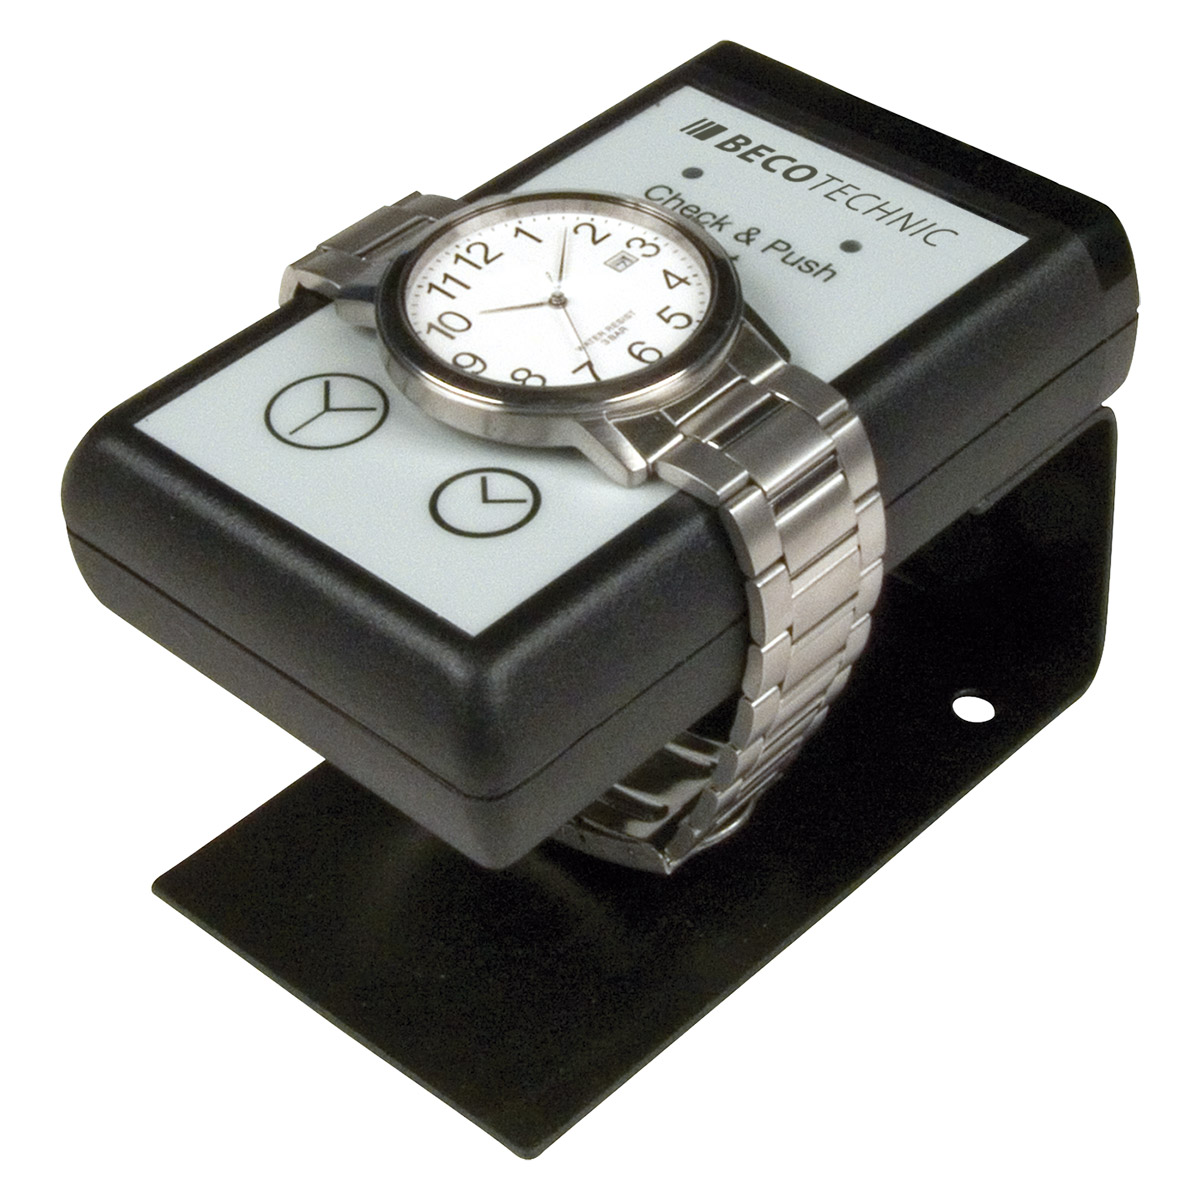 Check & Push appareil pour un test rapide de montres quartz